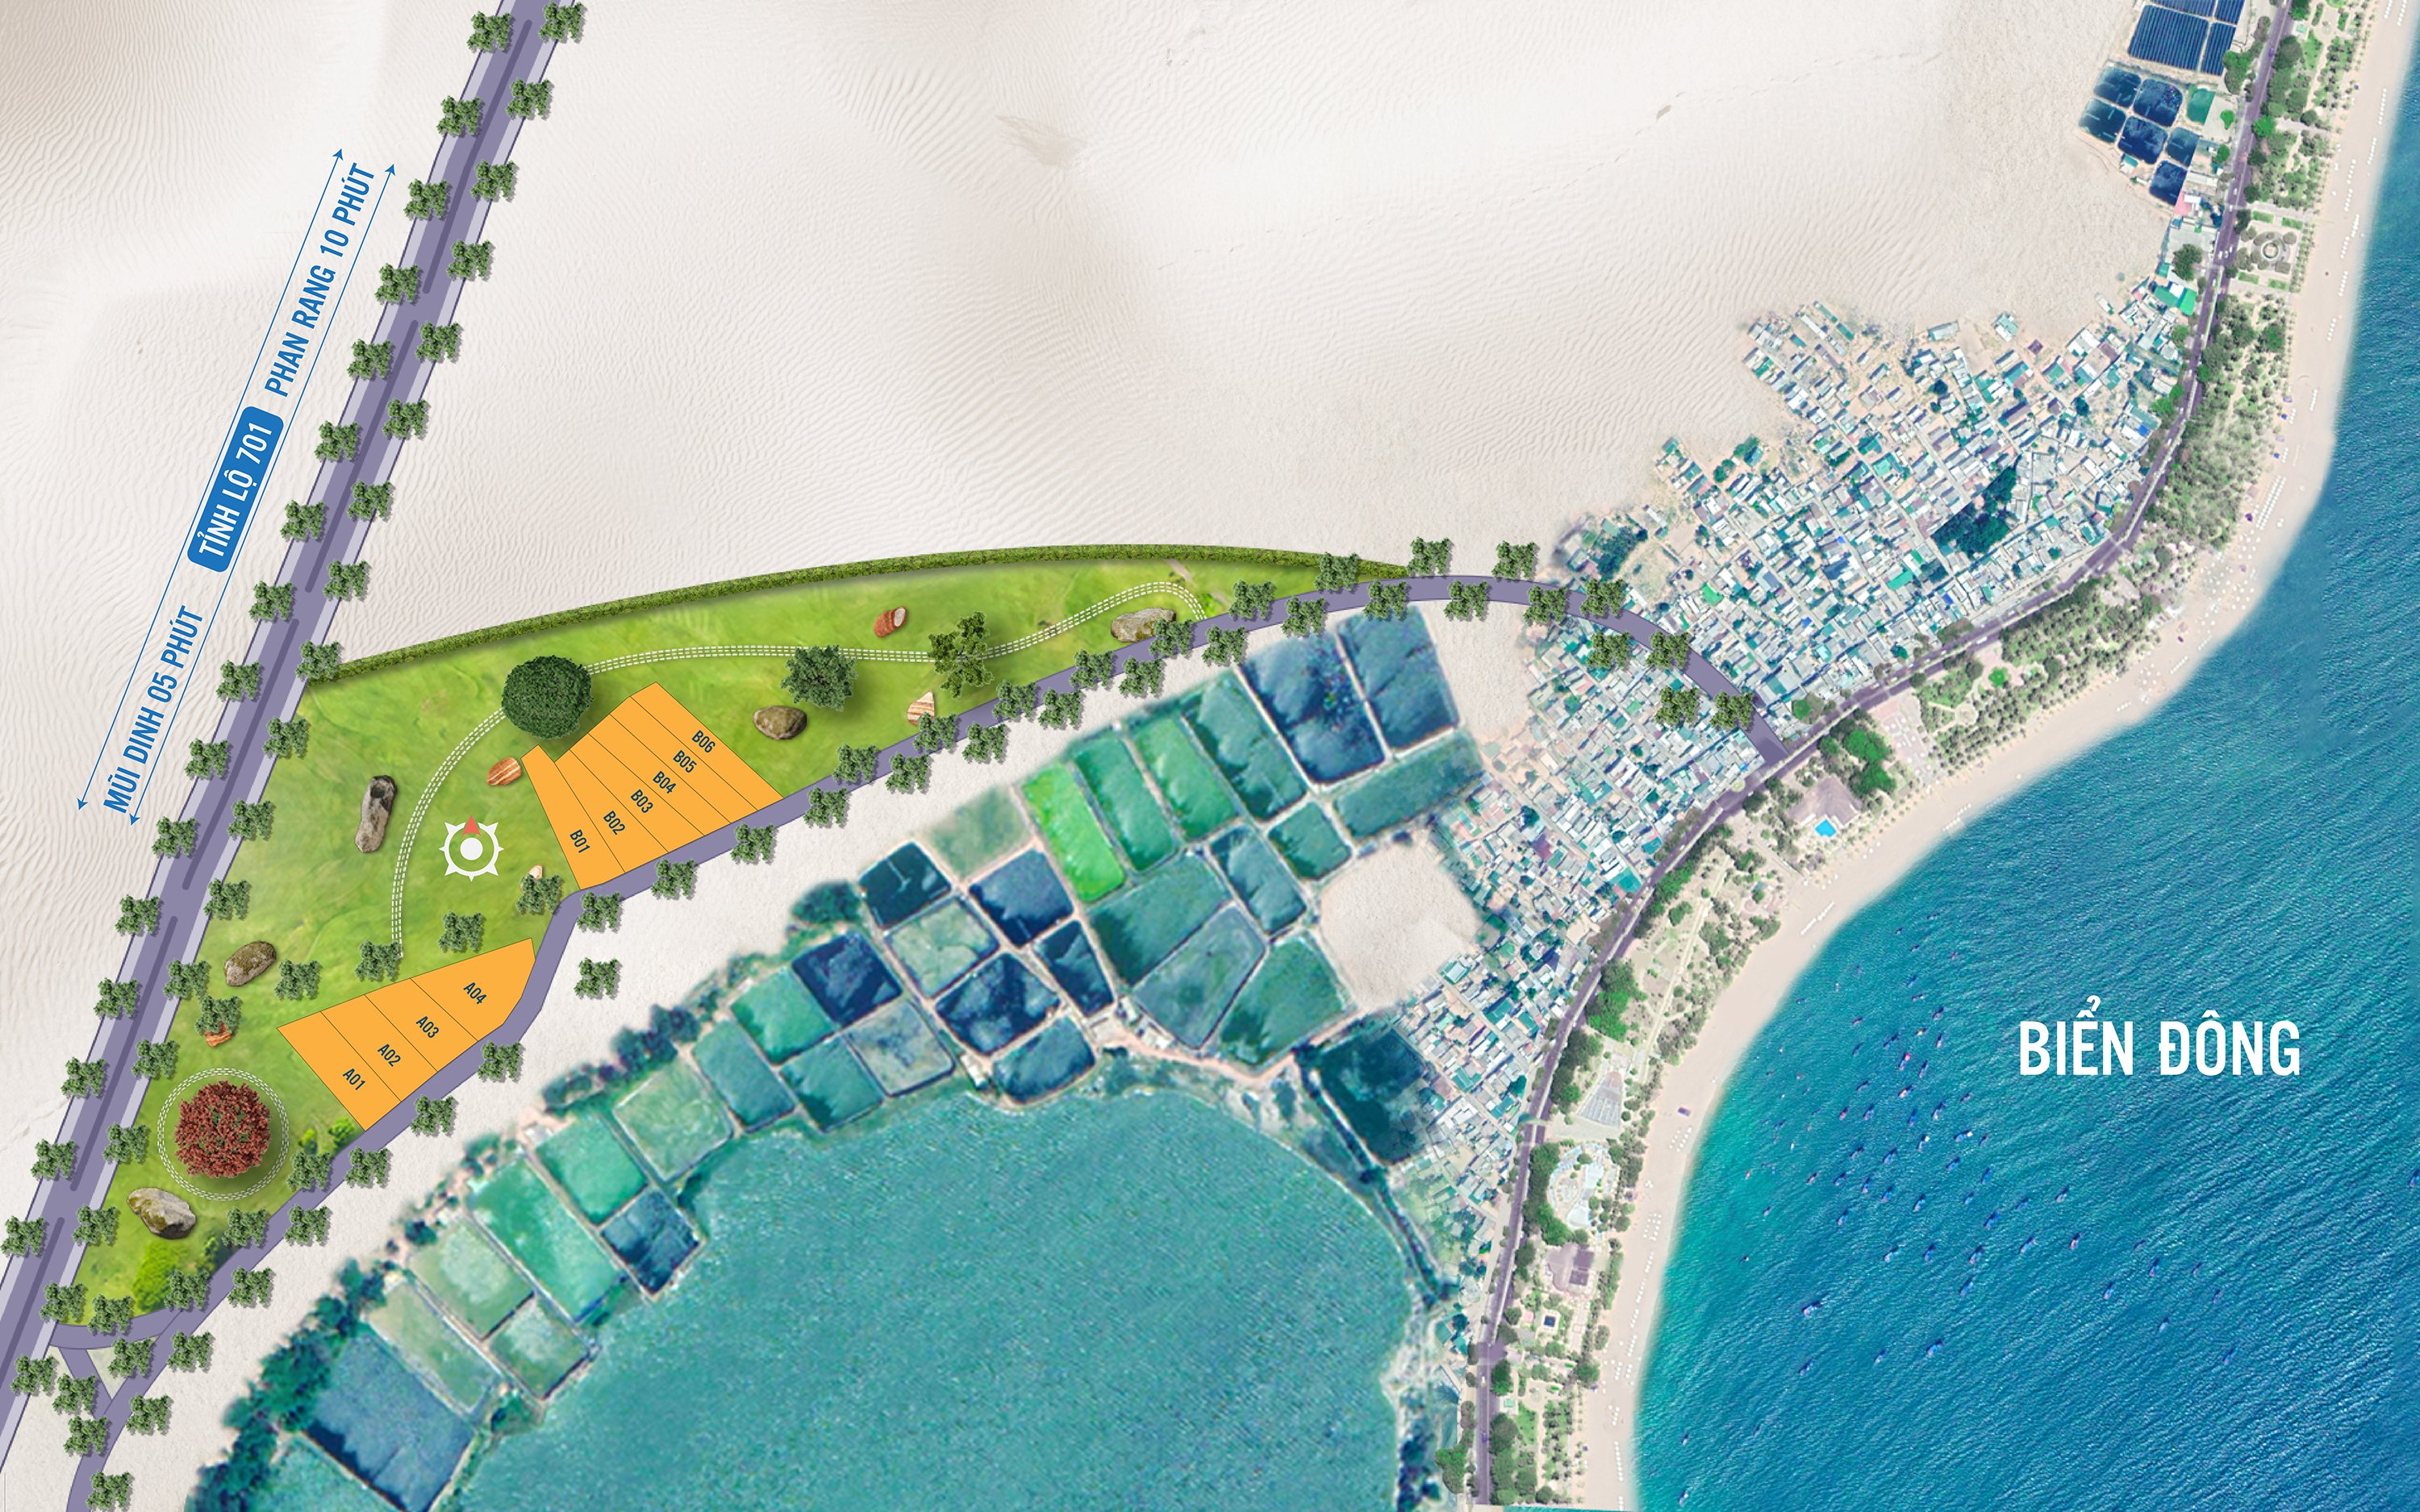 Đất nền quy hoạch đất ở - ONT - full thổ cư, view biển, view đầm Sơn Hải, gần Eco Park Mũi Dinh, giá từ 2,6 triệu/m2 11